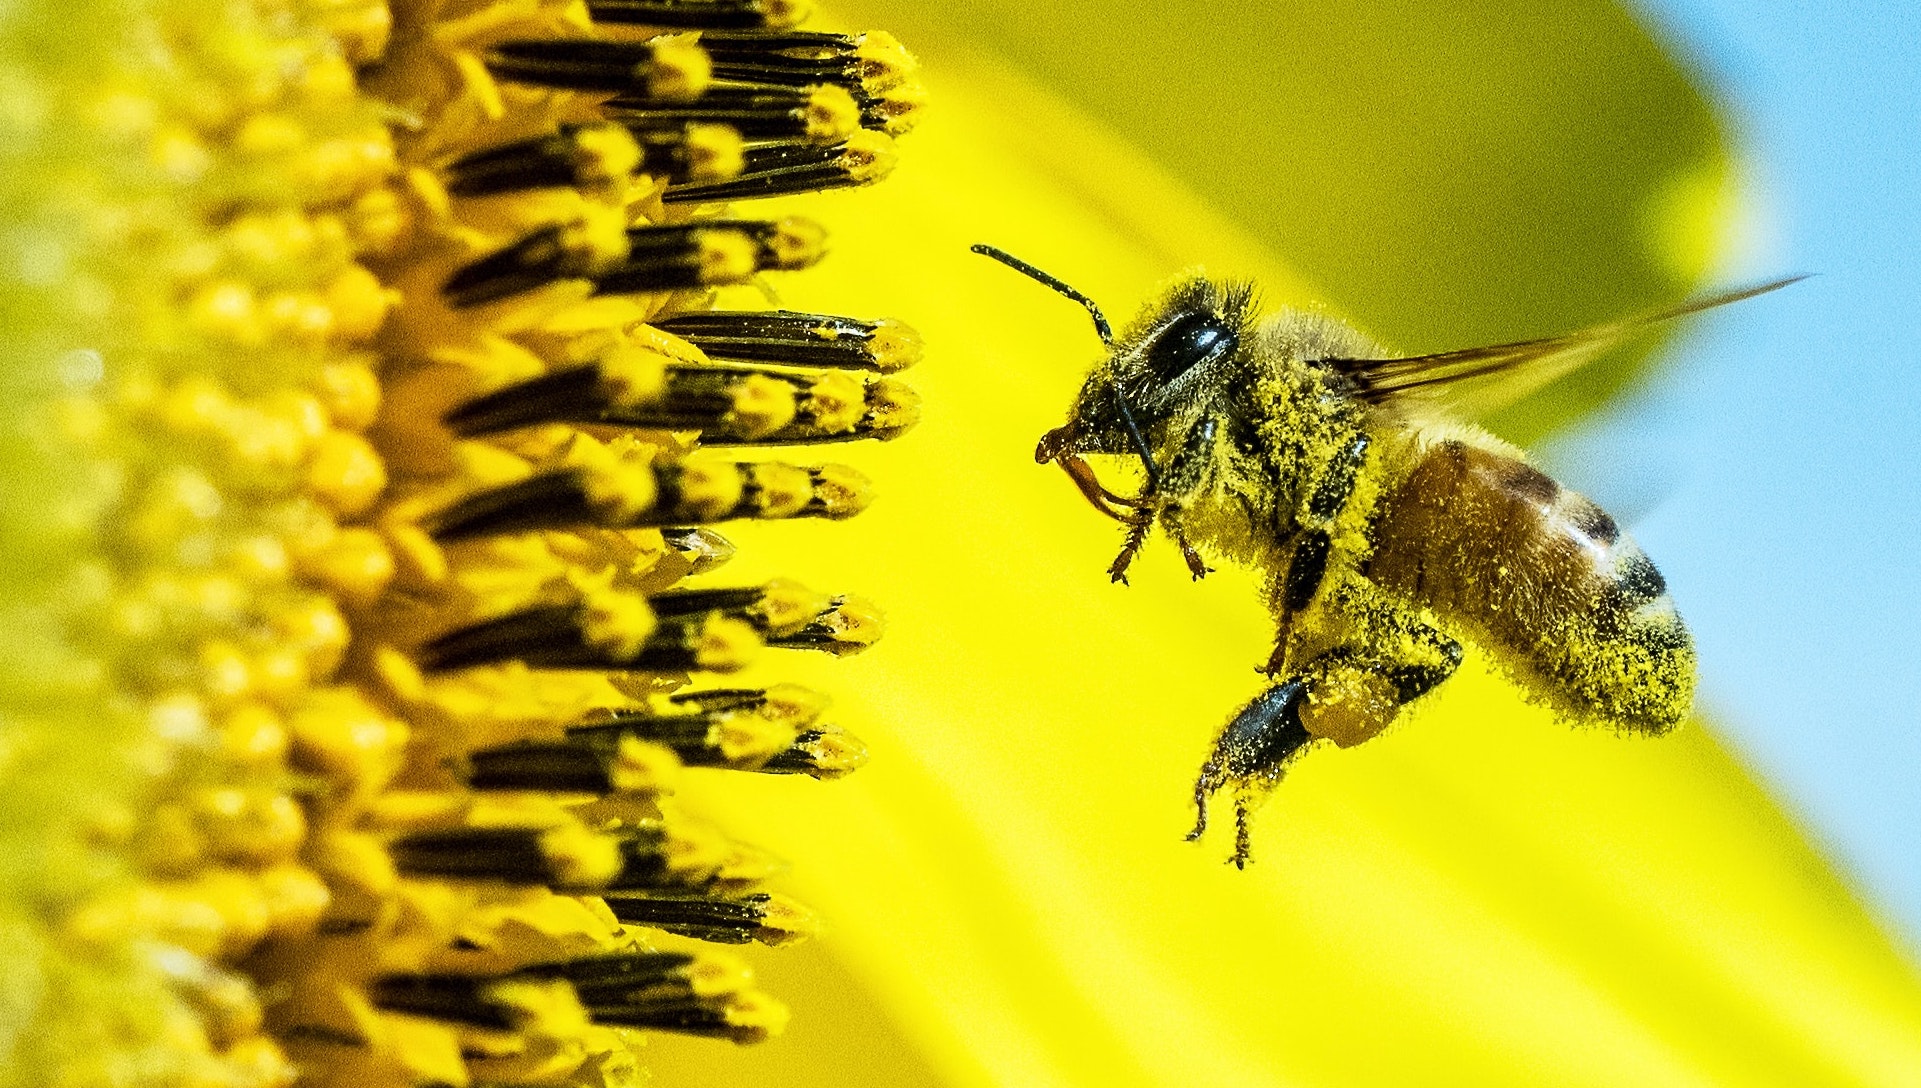 honeybee collecting pollen from flower